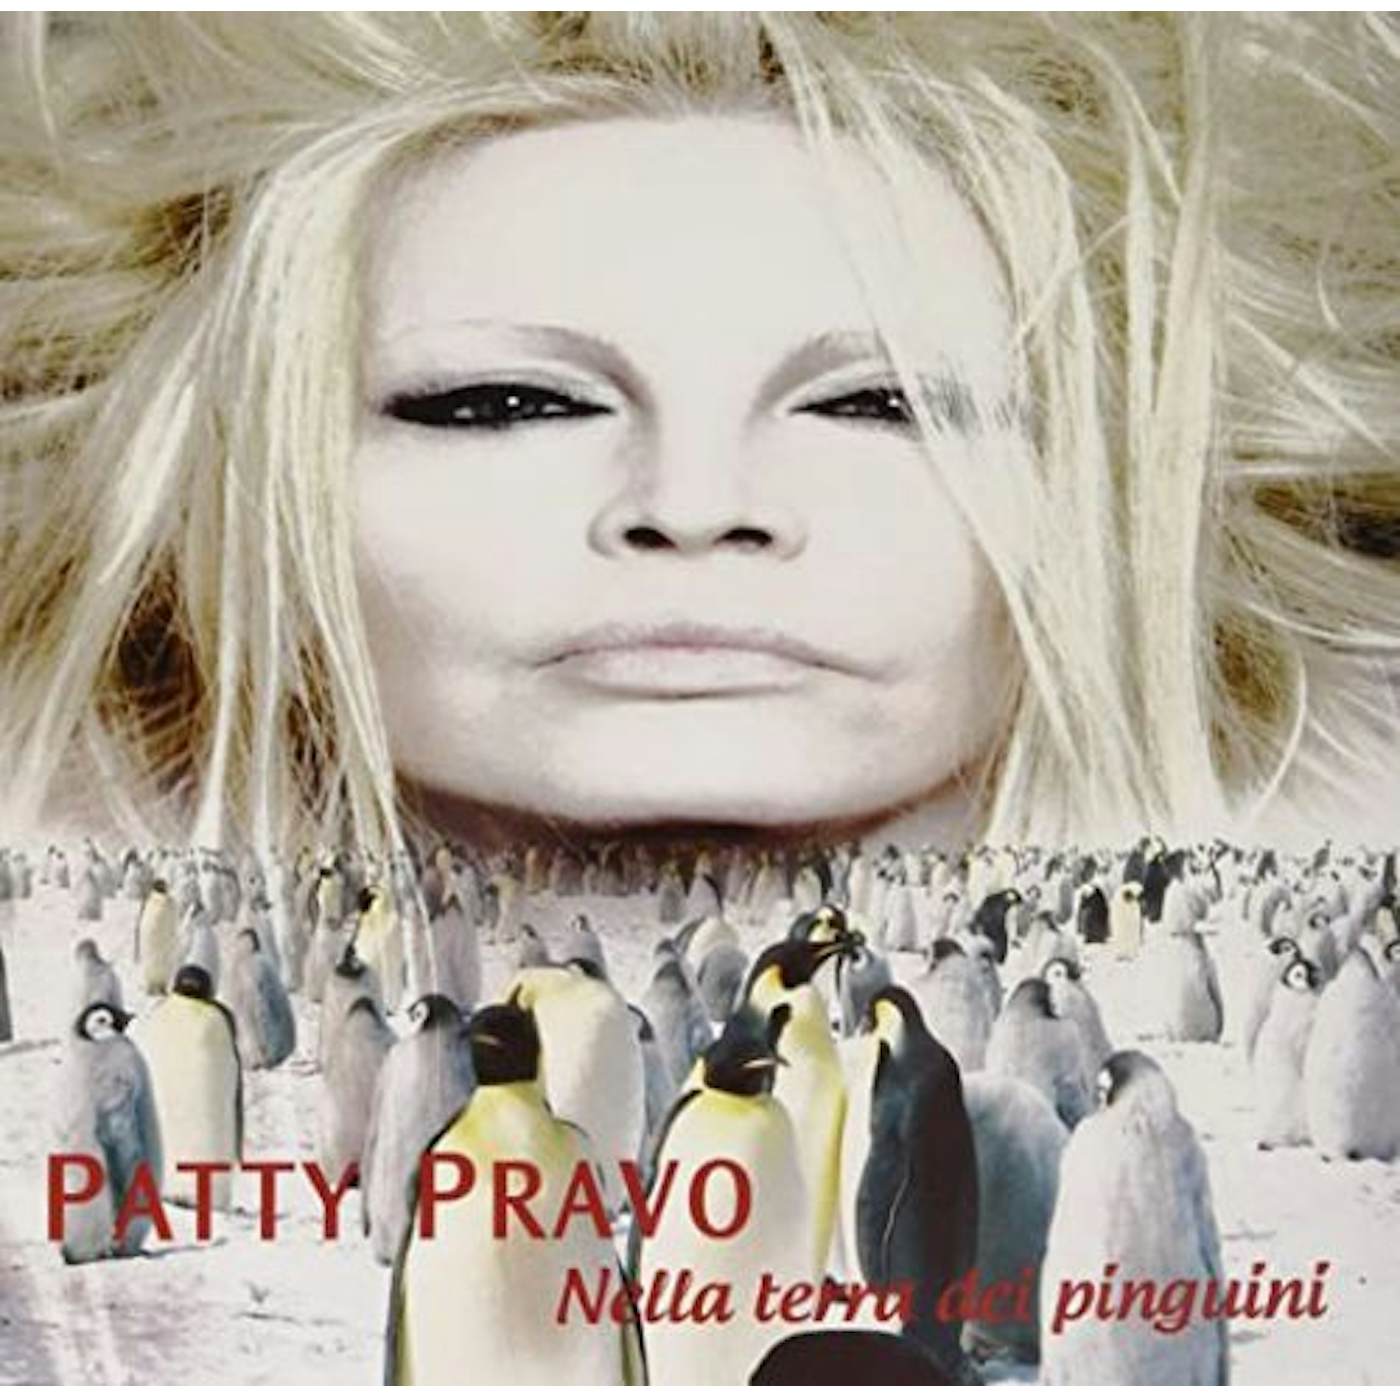 Patty Pravo Nella terra dei pinguini Vinyl Record